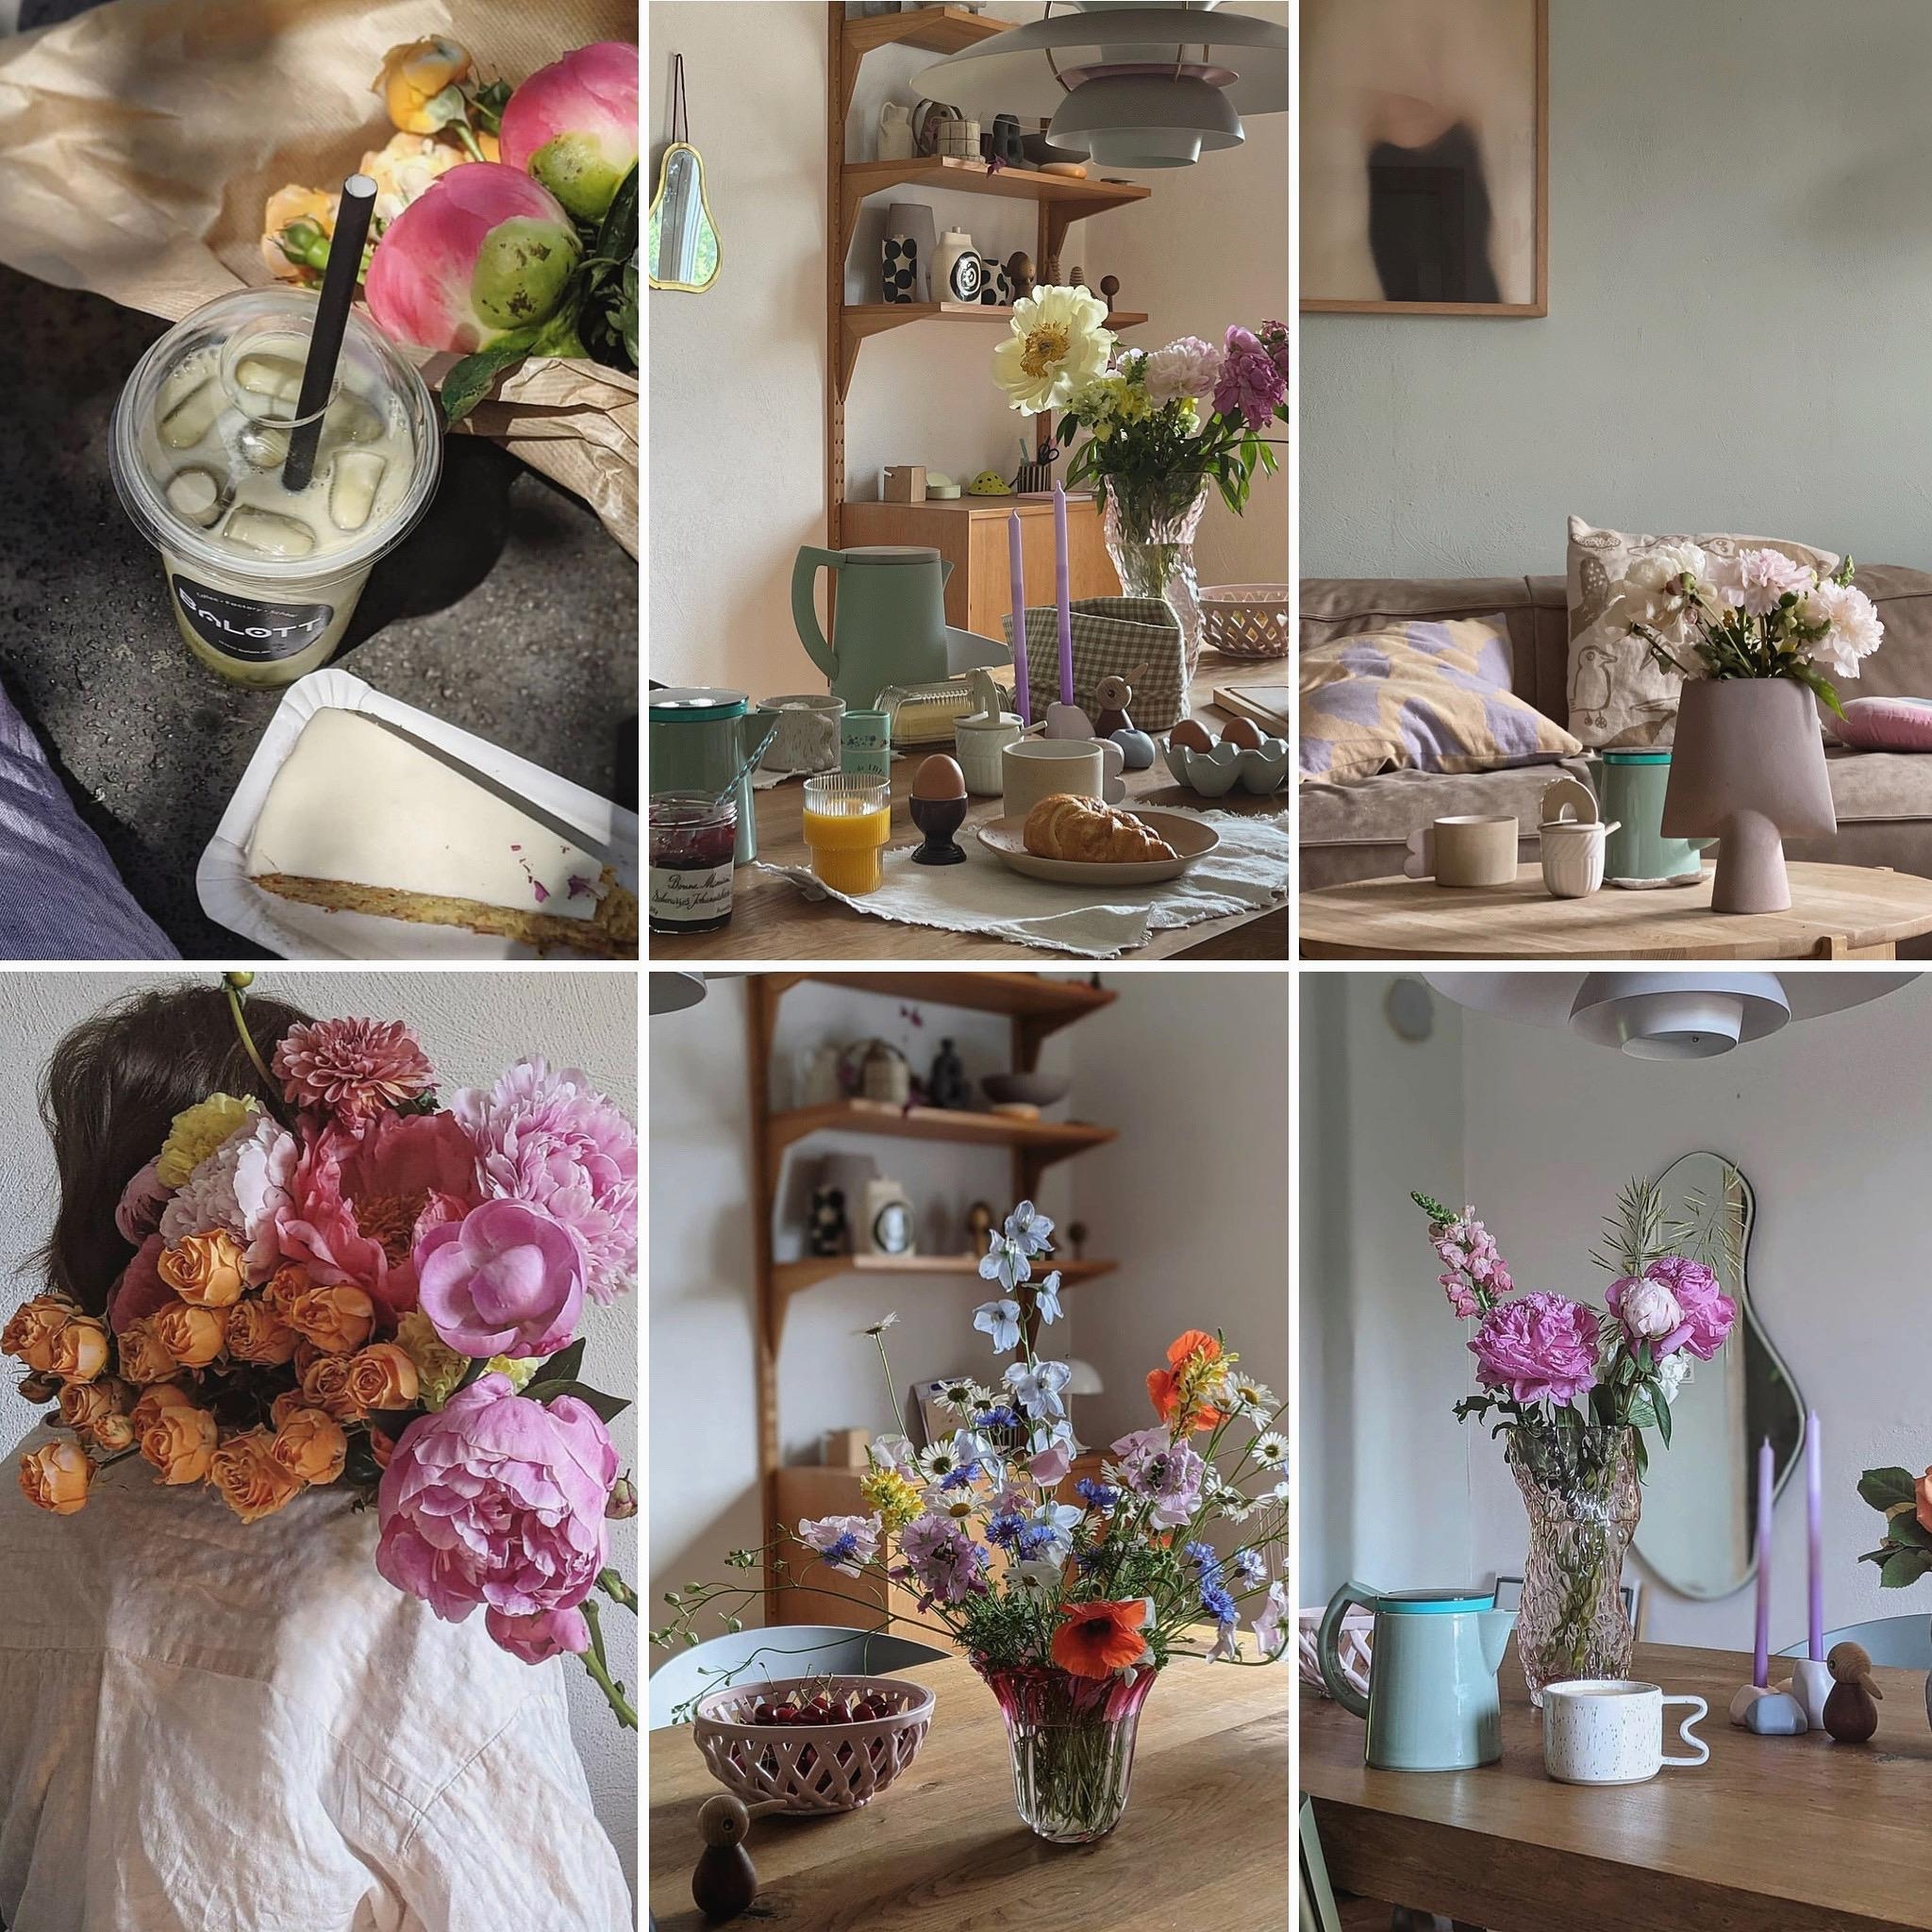 #juni#rückblick#collage#spring#home#interior#wohnen#altbauliebe#couchstyle#scandinavisch#homestory